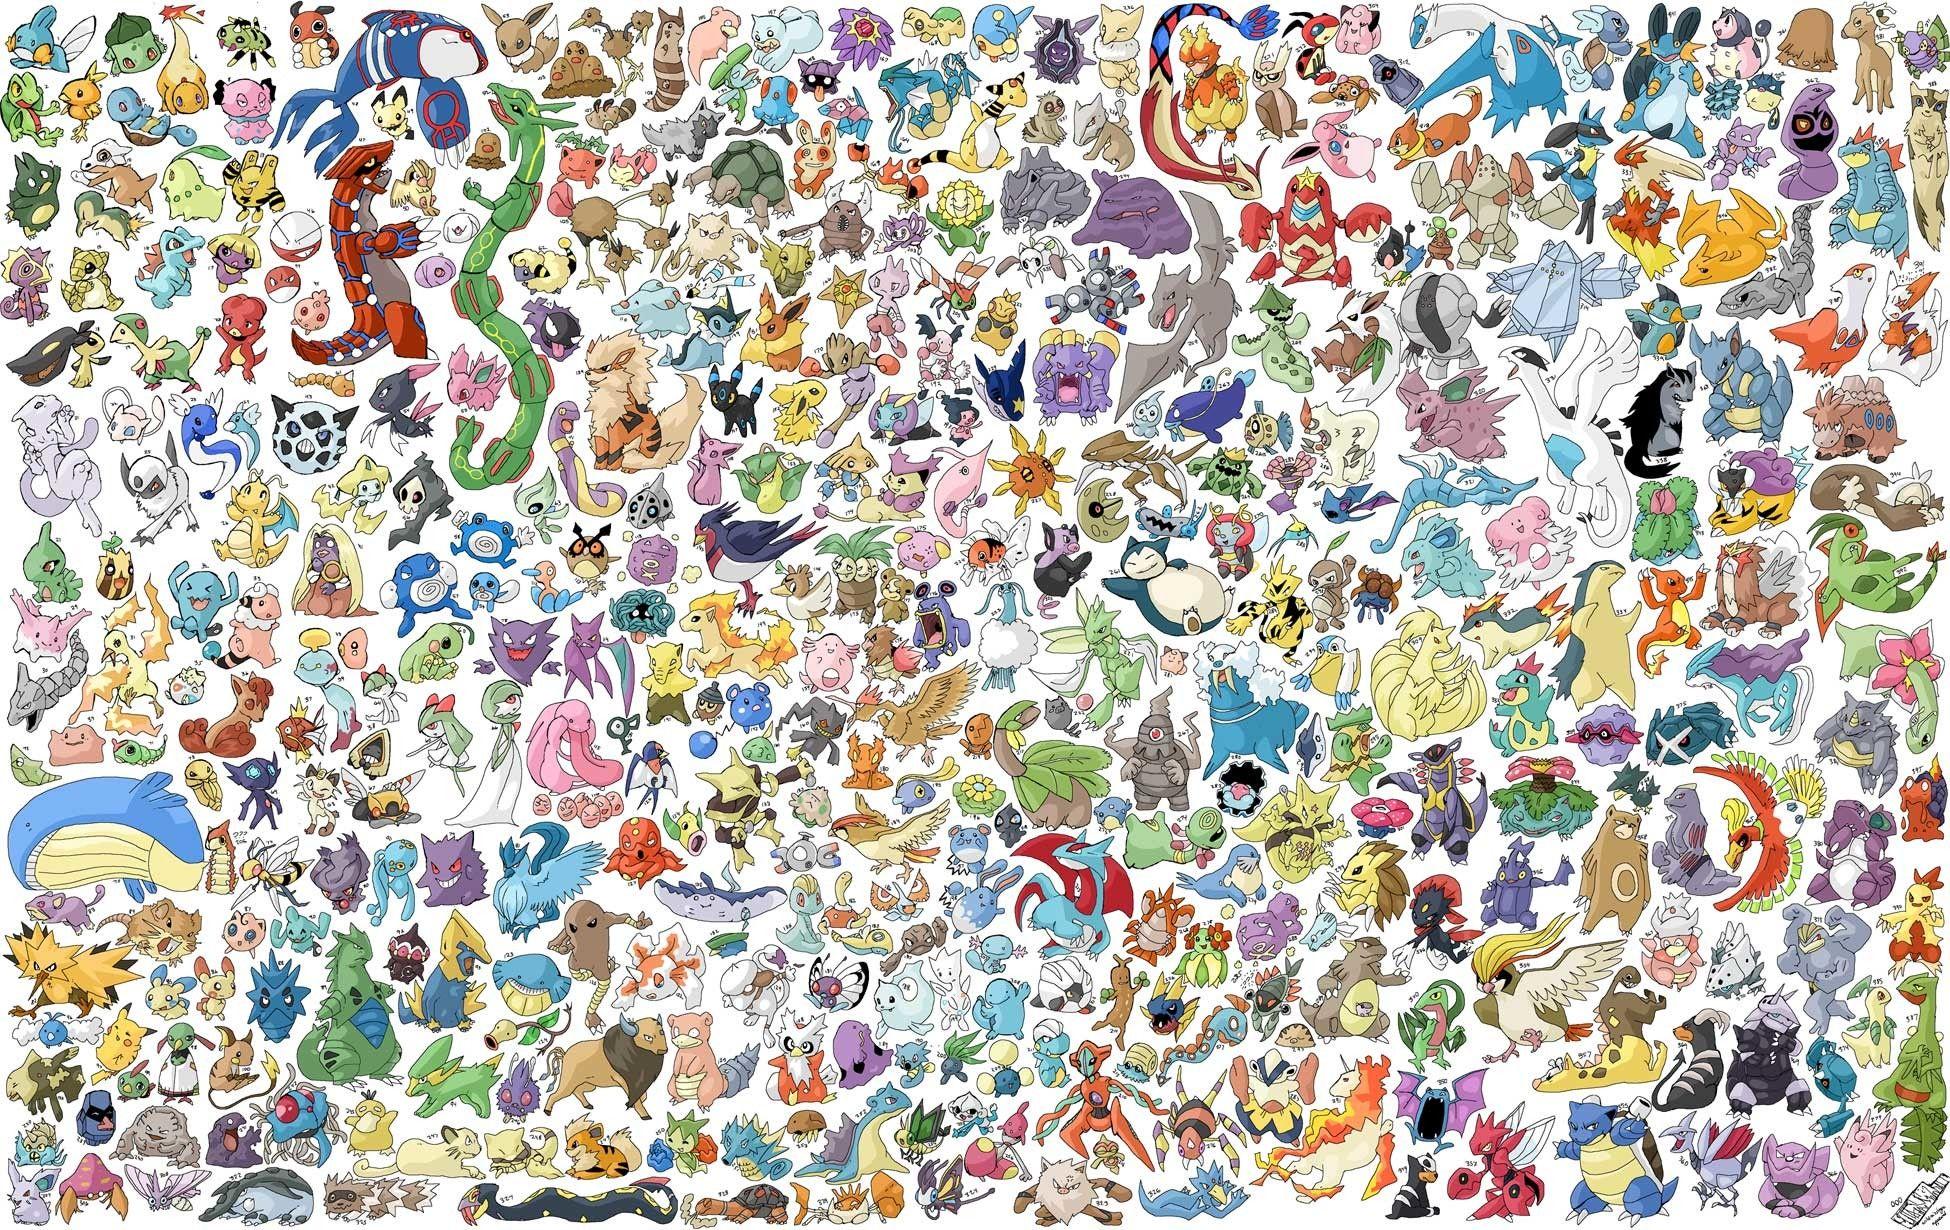 Hình nền Pokemon được cập nhật đầy đủ trên trang web của chúng tôi. Bạn sẽ tìm thấy tất cả những loại Pokemon yêu thích của mình trong kho hình nền đa dạng này. Với chất lượng tuyệt vời và độ phân giải cao, chắc chắn bạn sẽ không thể bỏ qua!